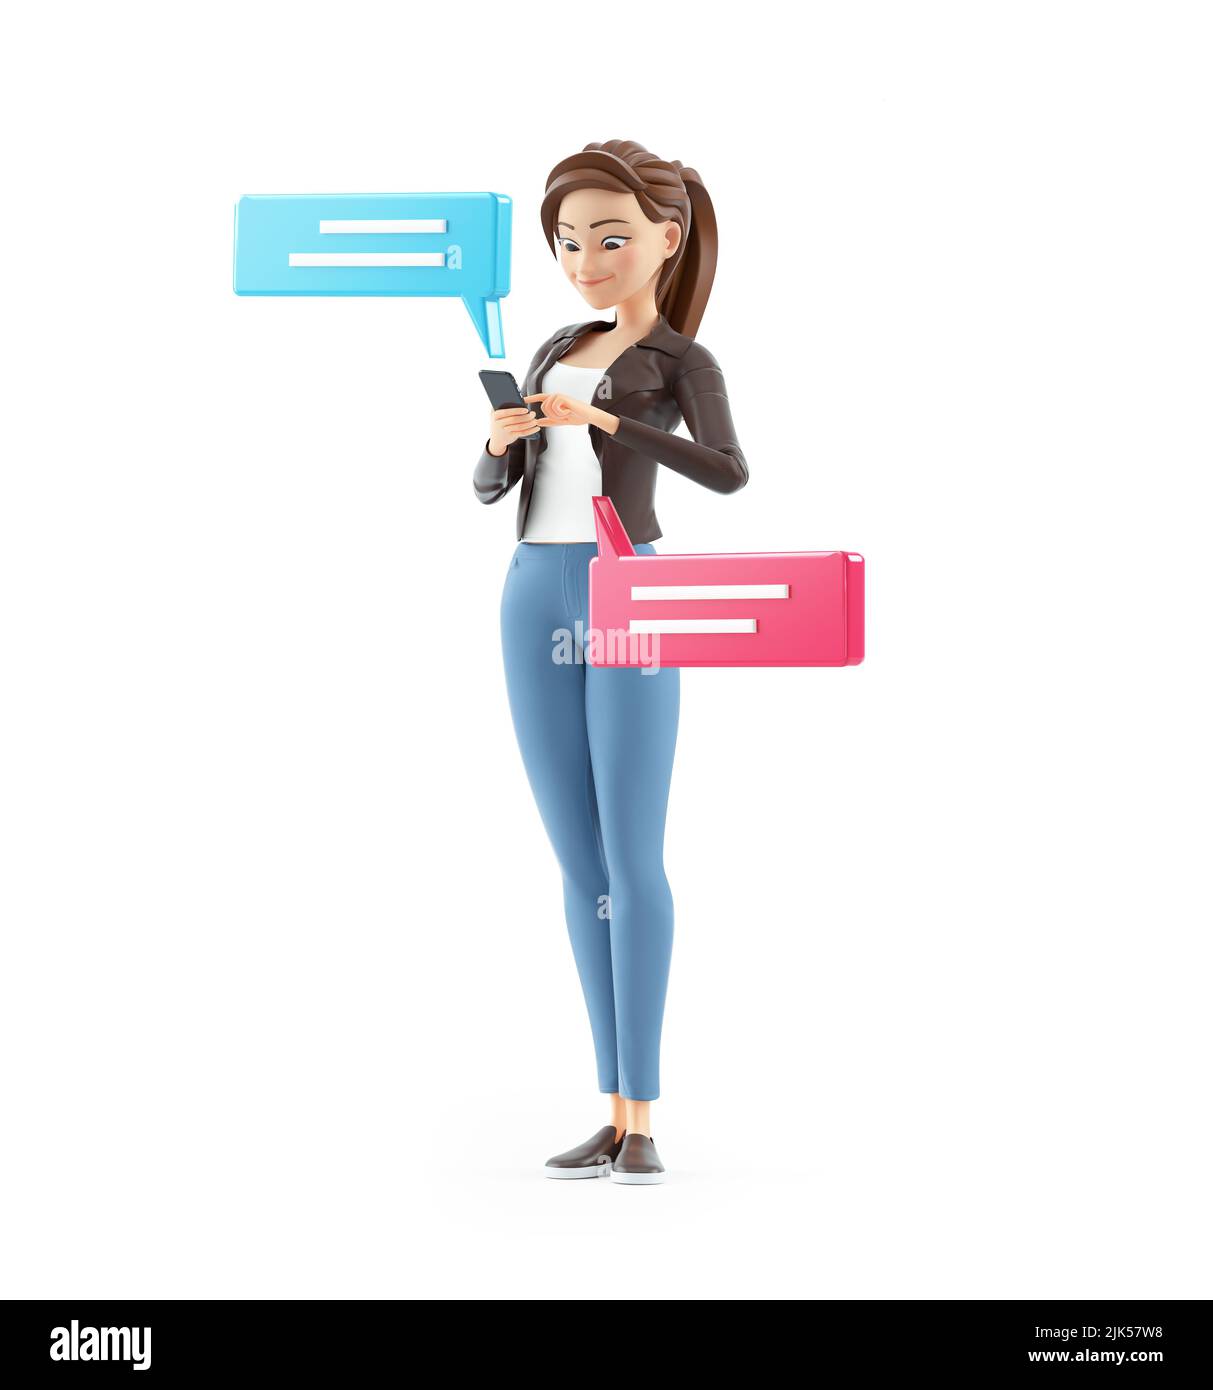 3d fumetto donna invio di messaggi di testo con smartphone, illustrazione isolata su sfondo bianco Foto Stock